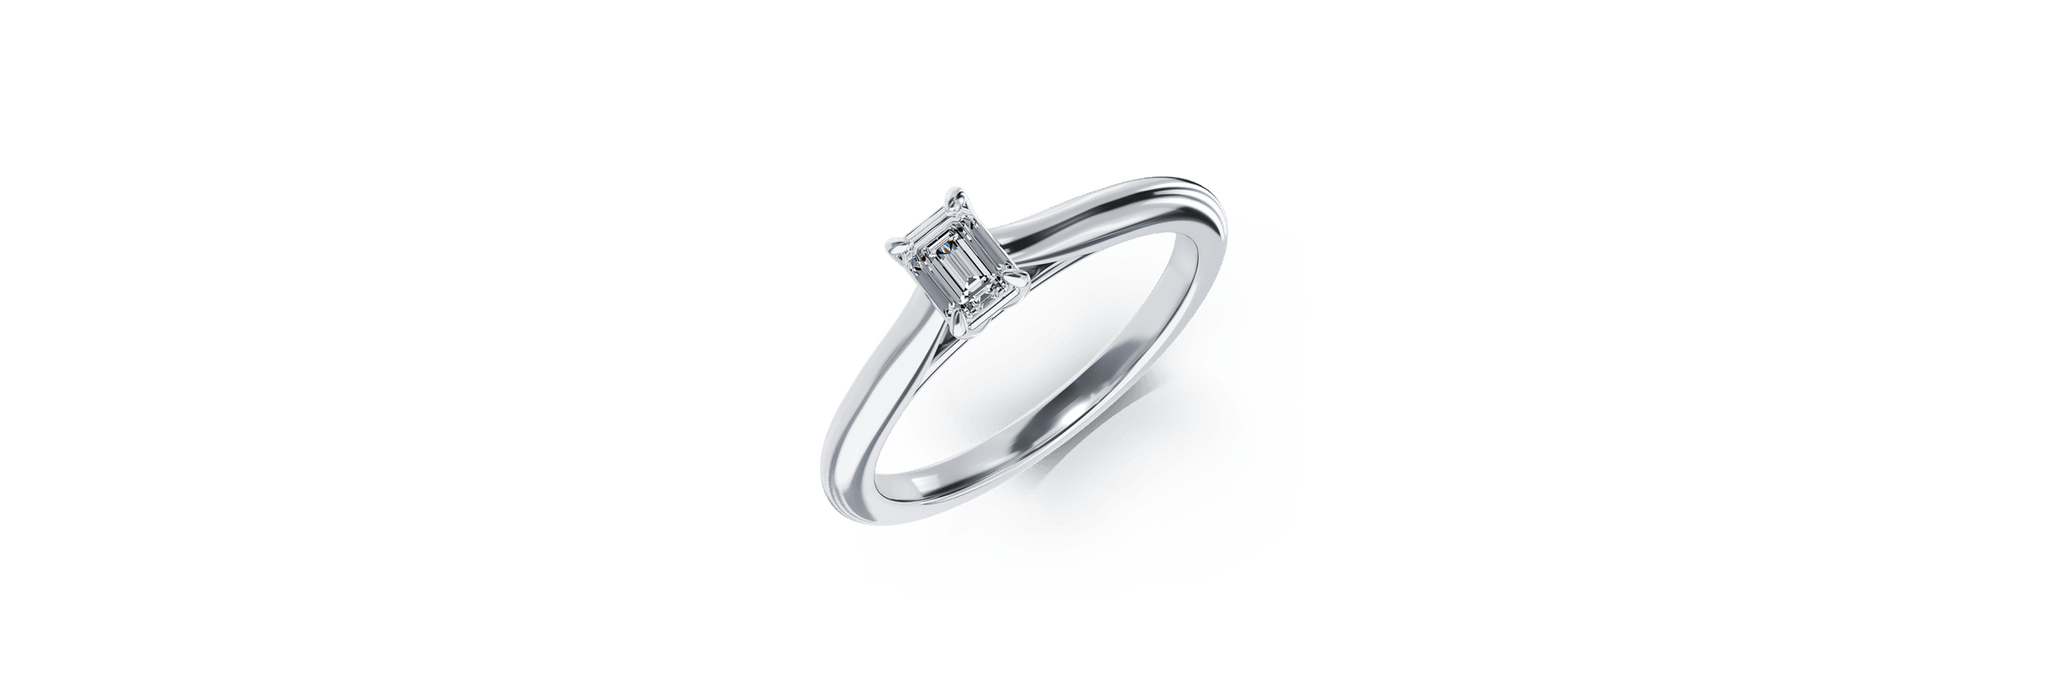 Inel de logodna din platina cu un diamant solitaire de 0.256ct